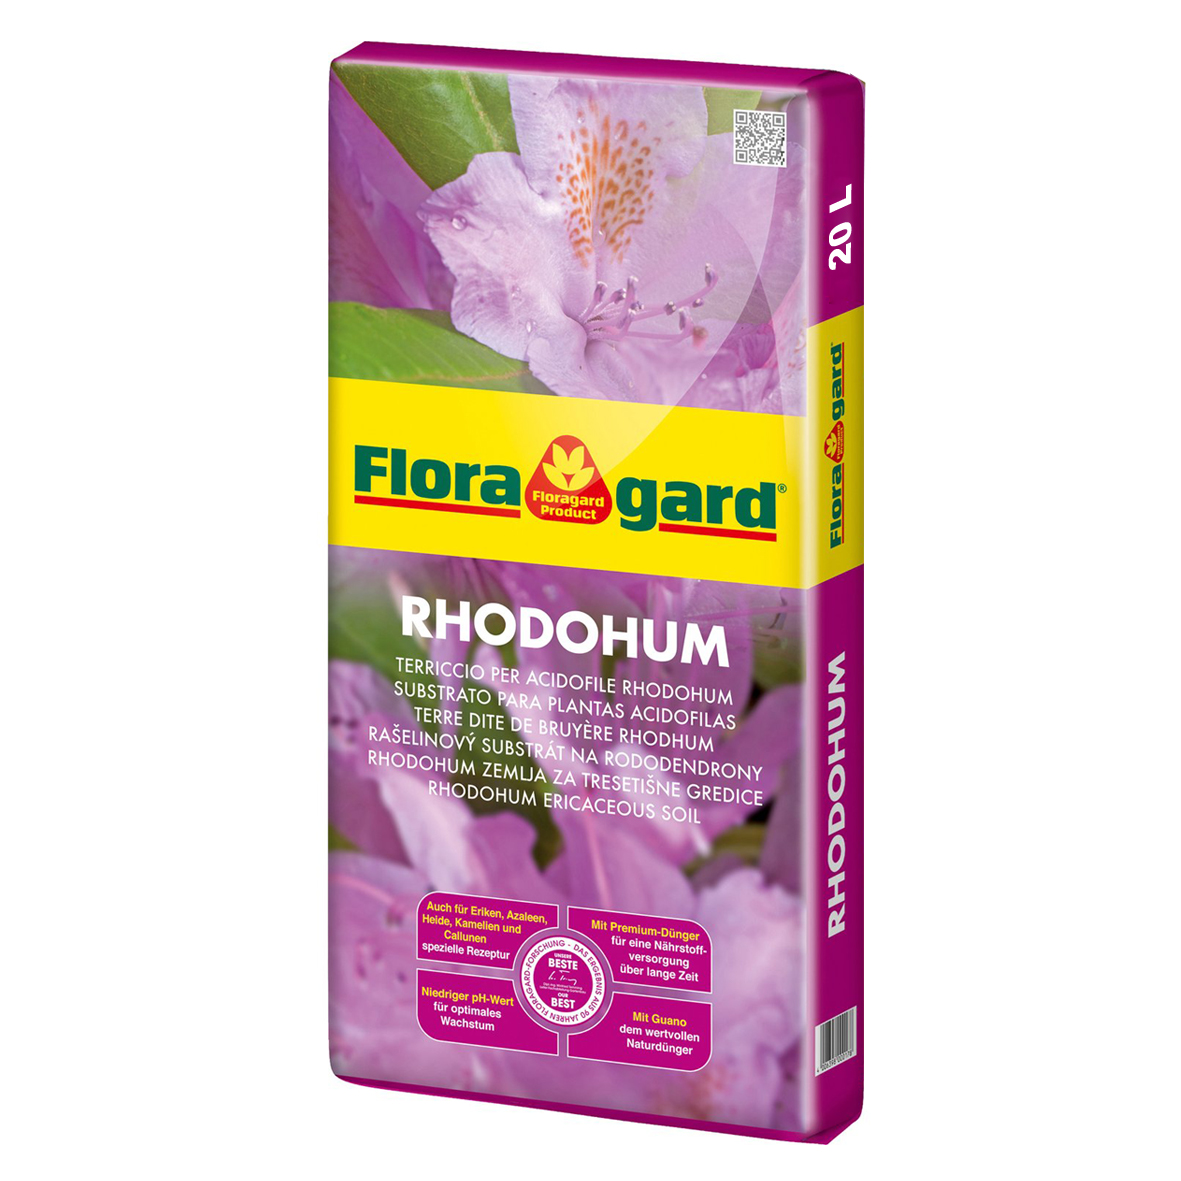 Торфяной субстрат для рододендронов, азалий и т.д. Floragard Rhodohum